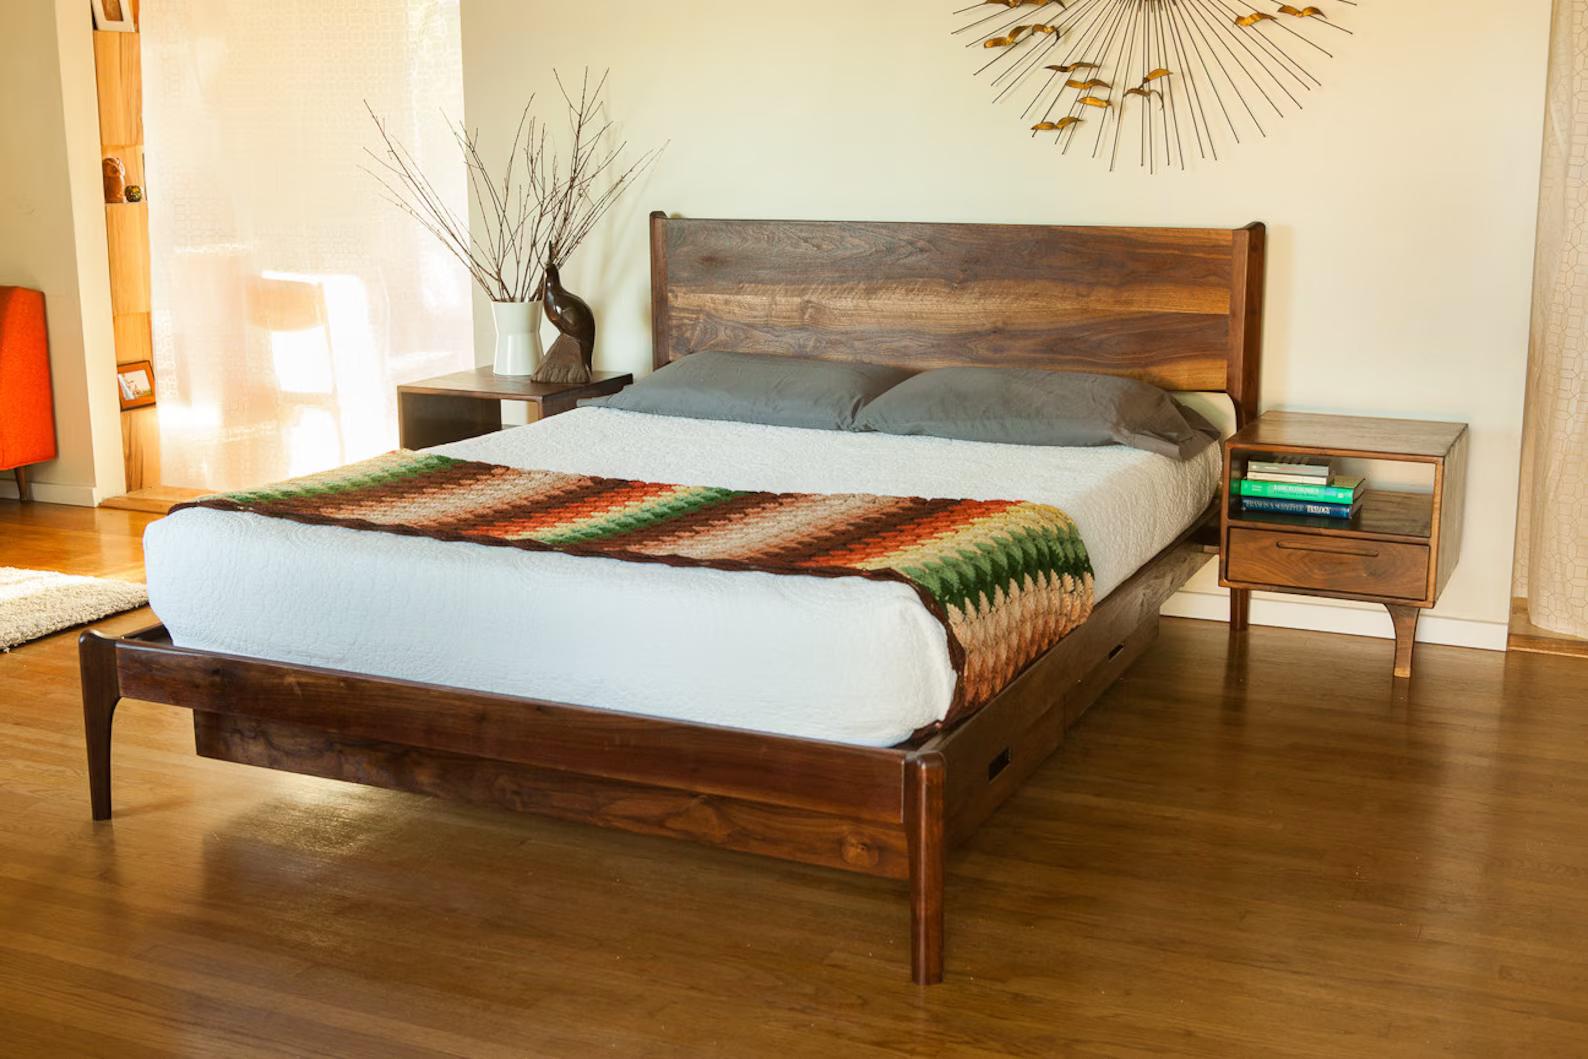 Dieses Stück wurde von meiner Wenigkeit in Long Beach entworfen und handgefertigt. Das abgebildete Bett ist aus Nussbaum, aber ich kann auf Anfrage auch andere Hölzer verwenden. Das Design ist mein eigenes, inspiriert von den skandinavischen Möbeln